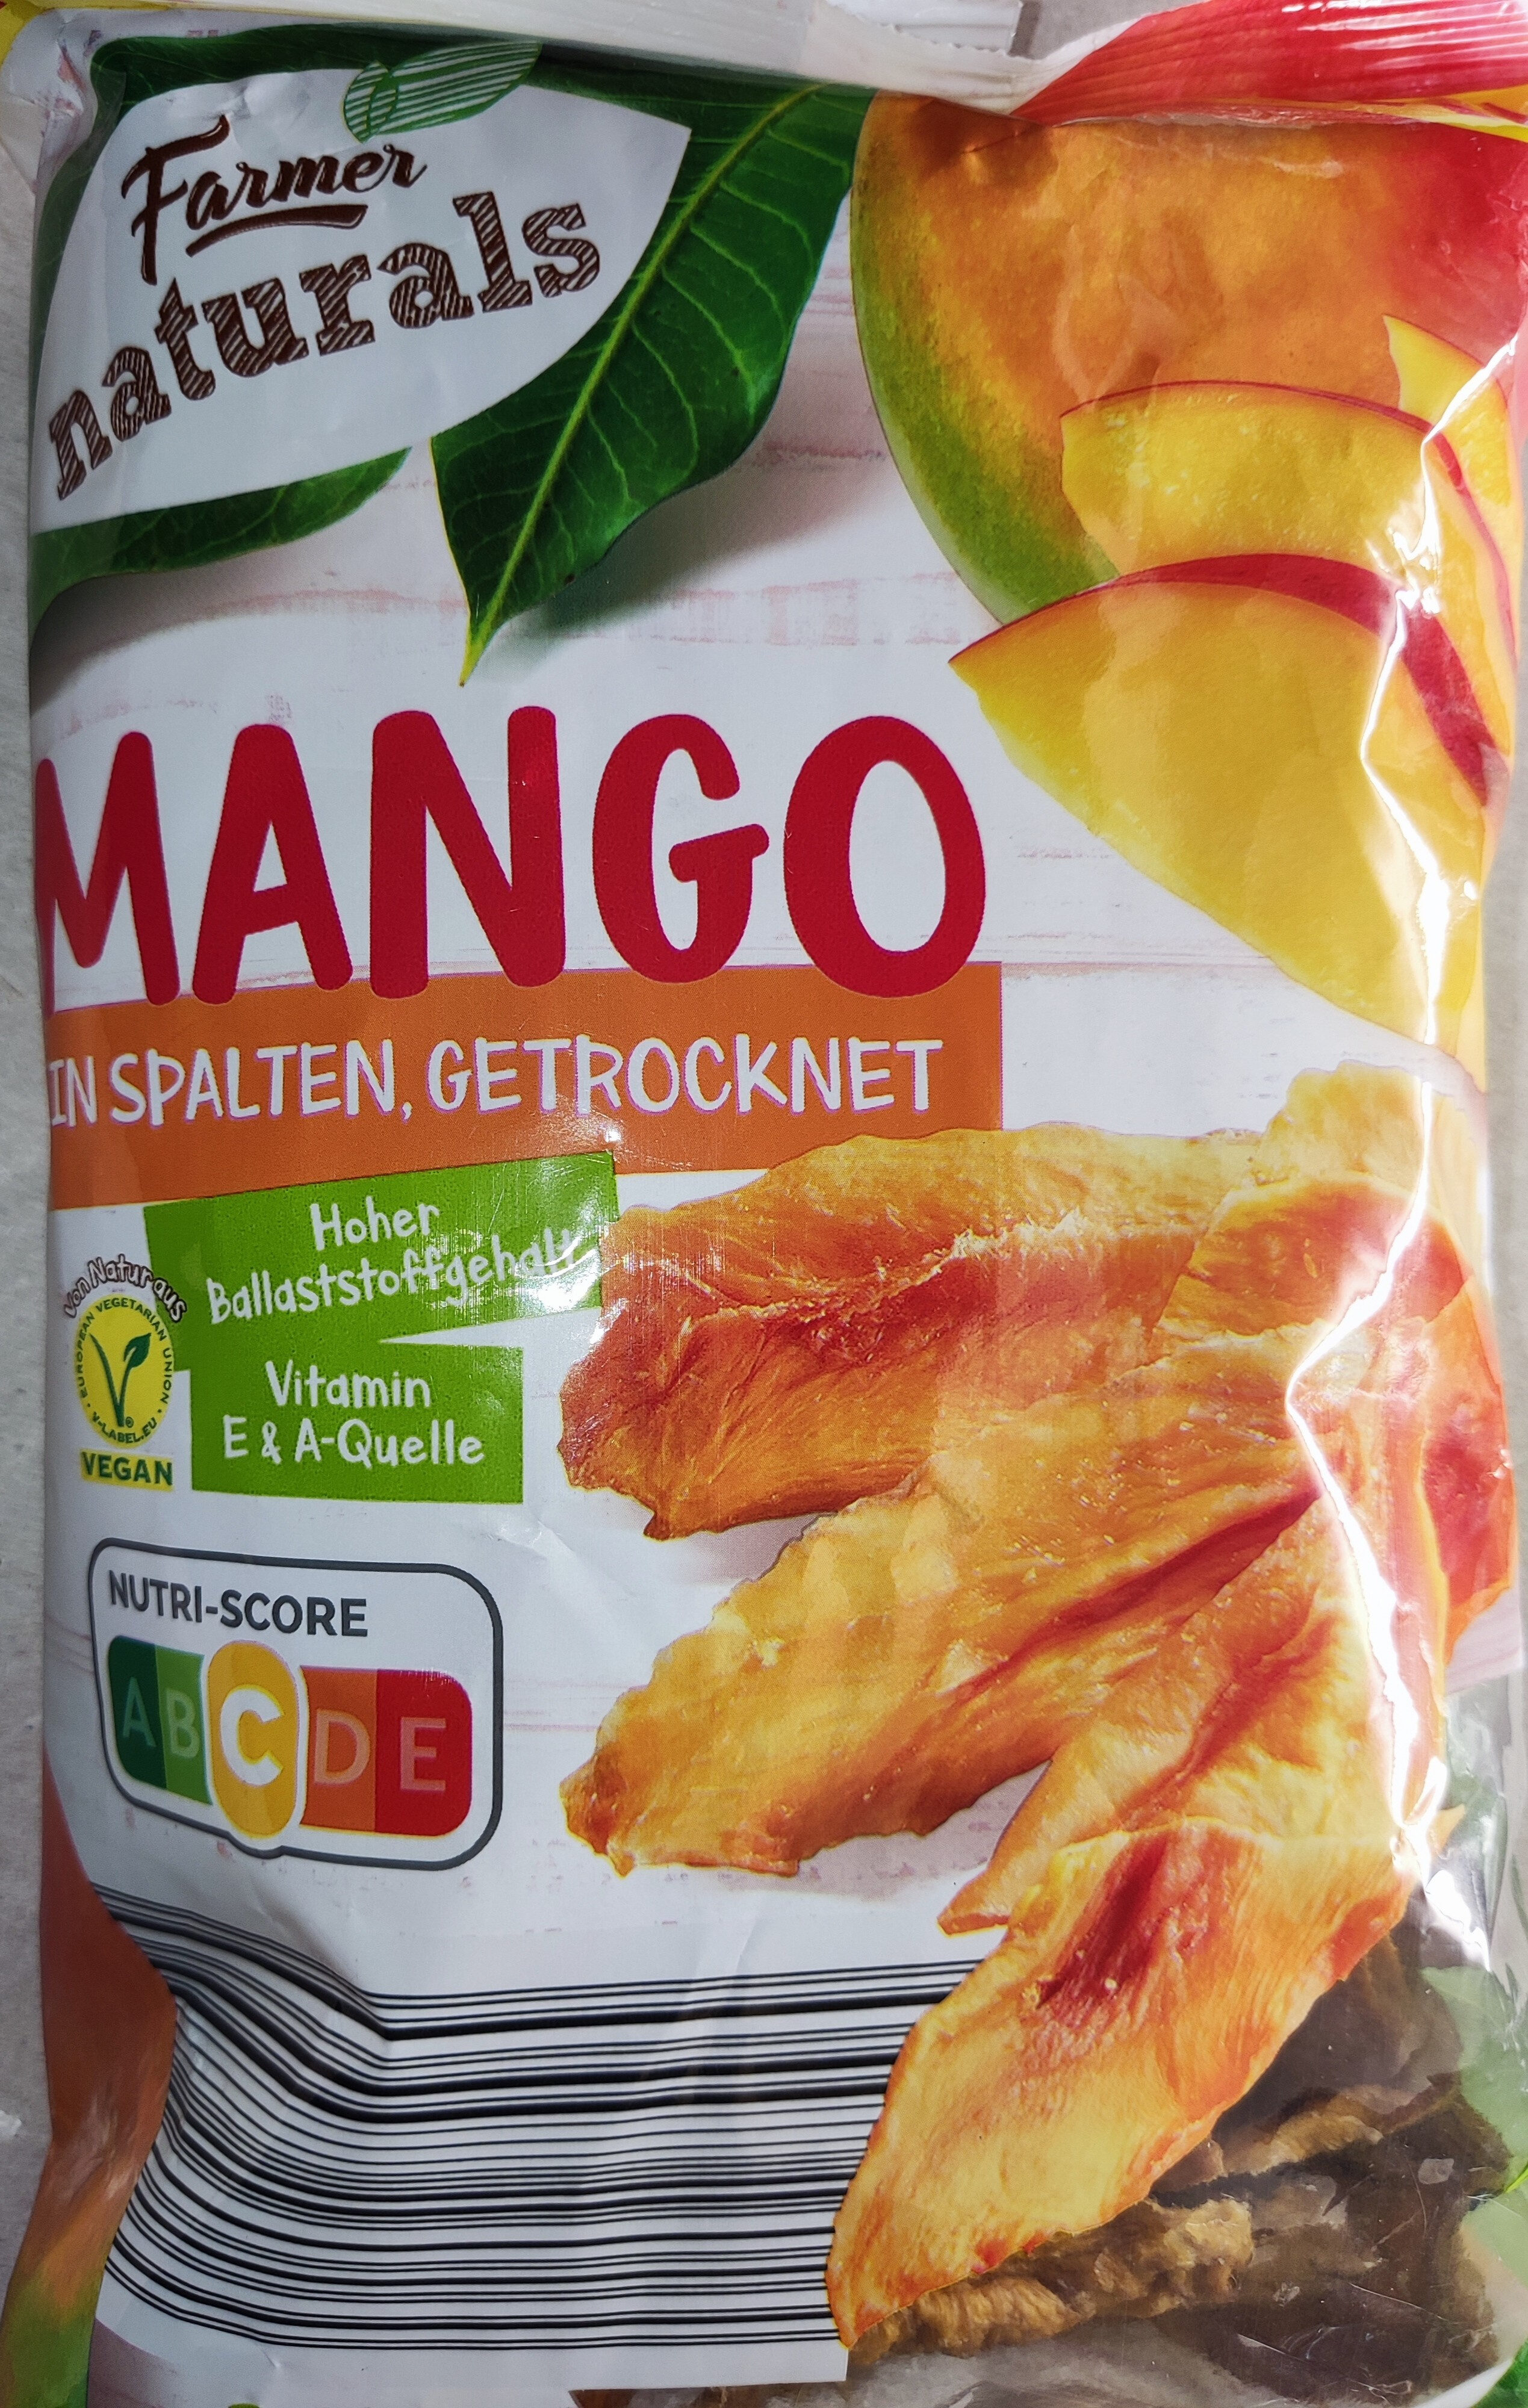 Mango in Spalten, getrocknet - Produkt